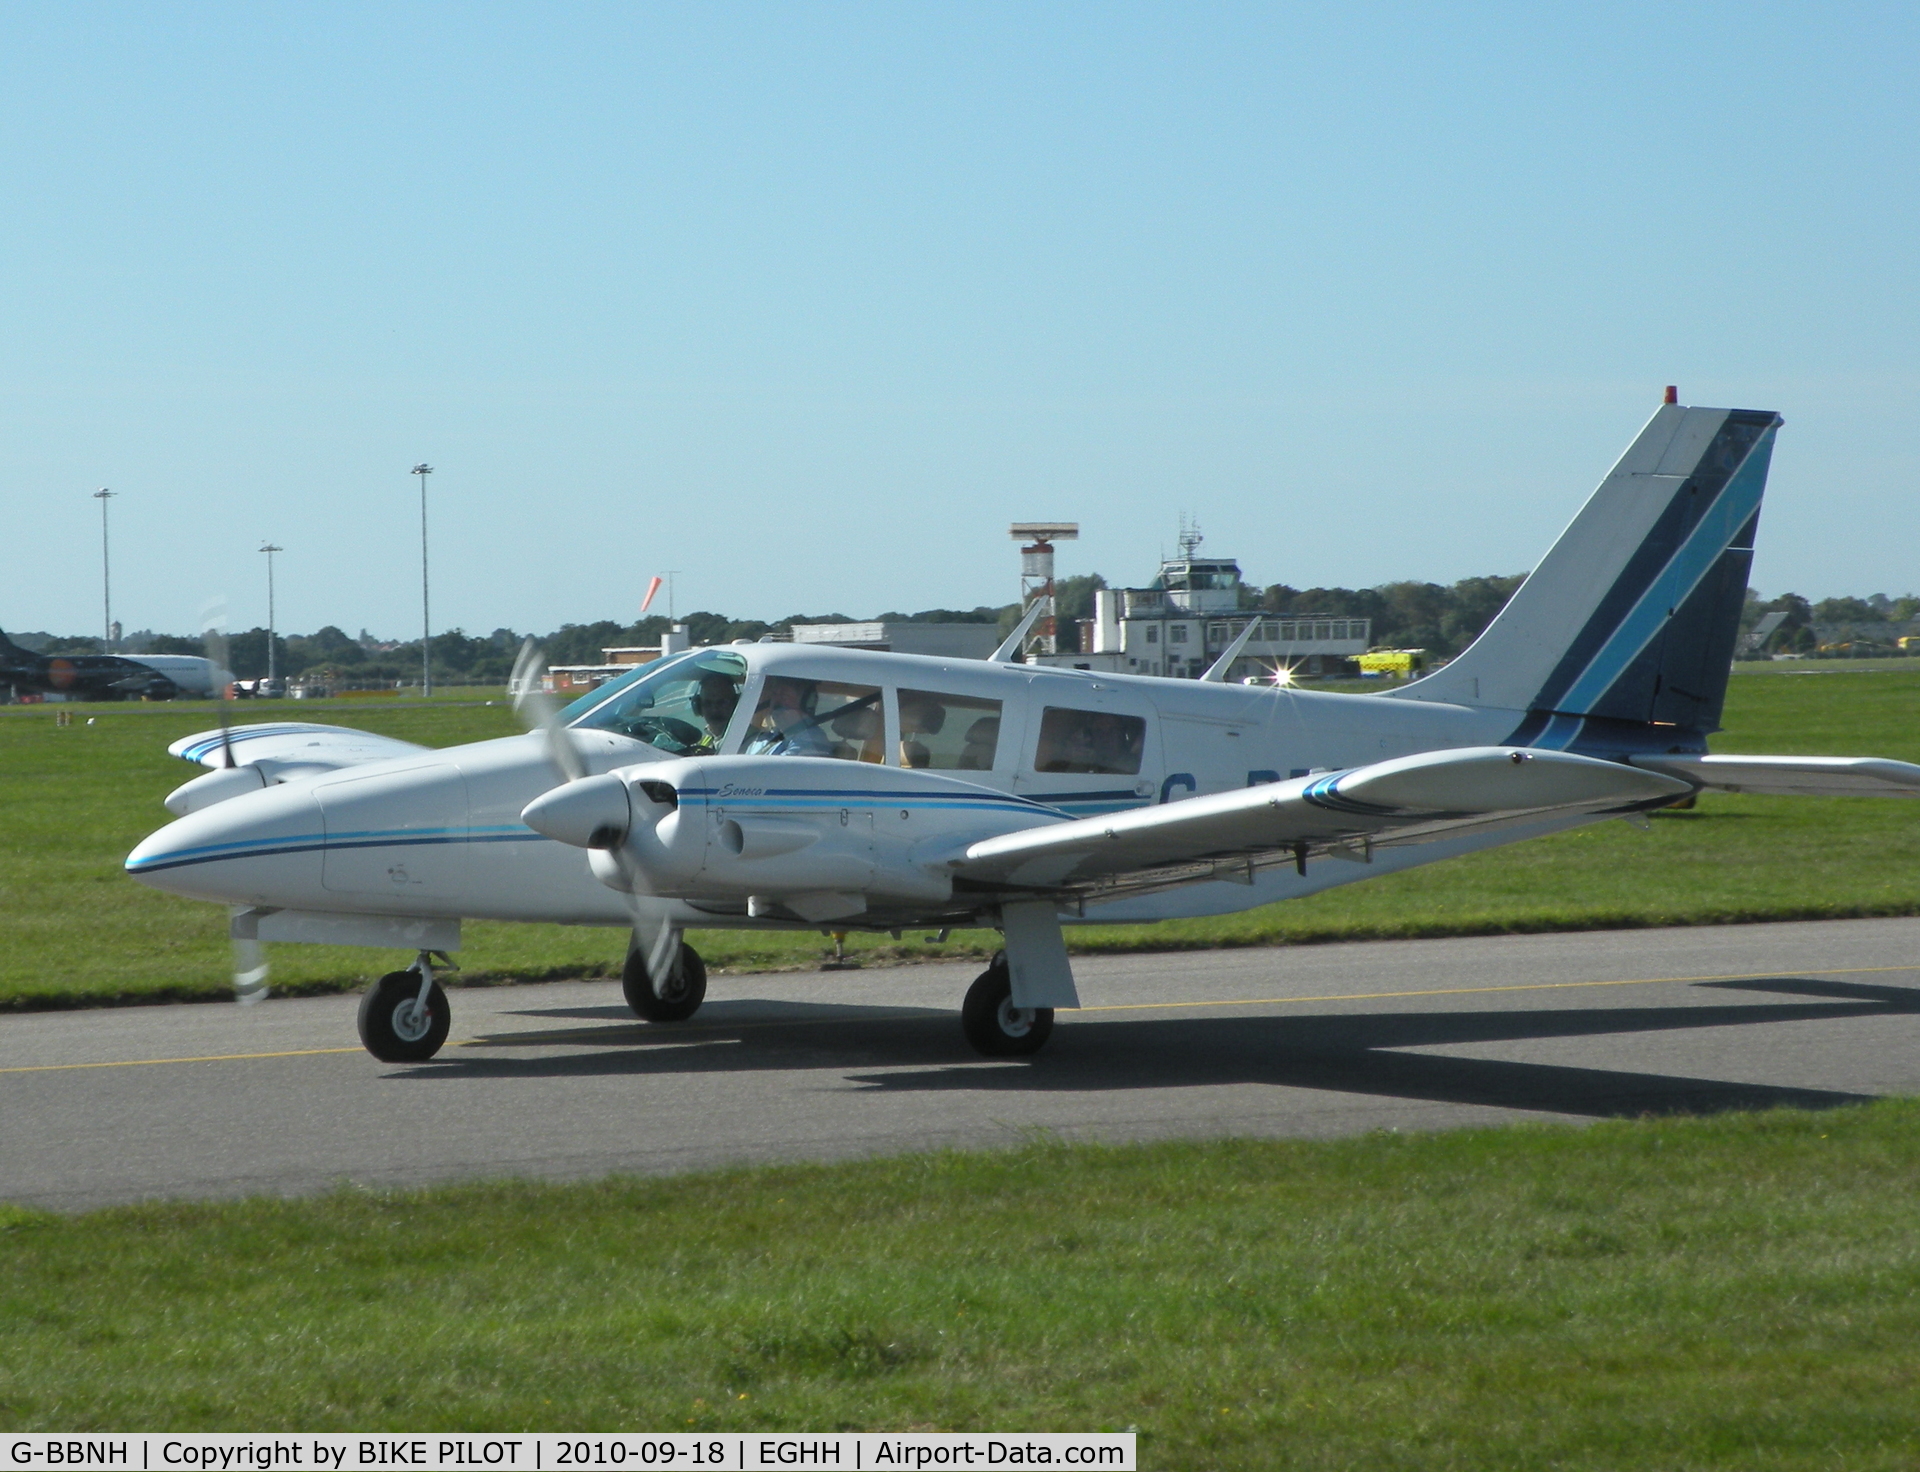 G-BBNH, 1973 Piper PA-34-200 Seneca C/N 34-7350339, Taxying past the Flying Club